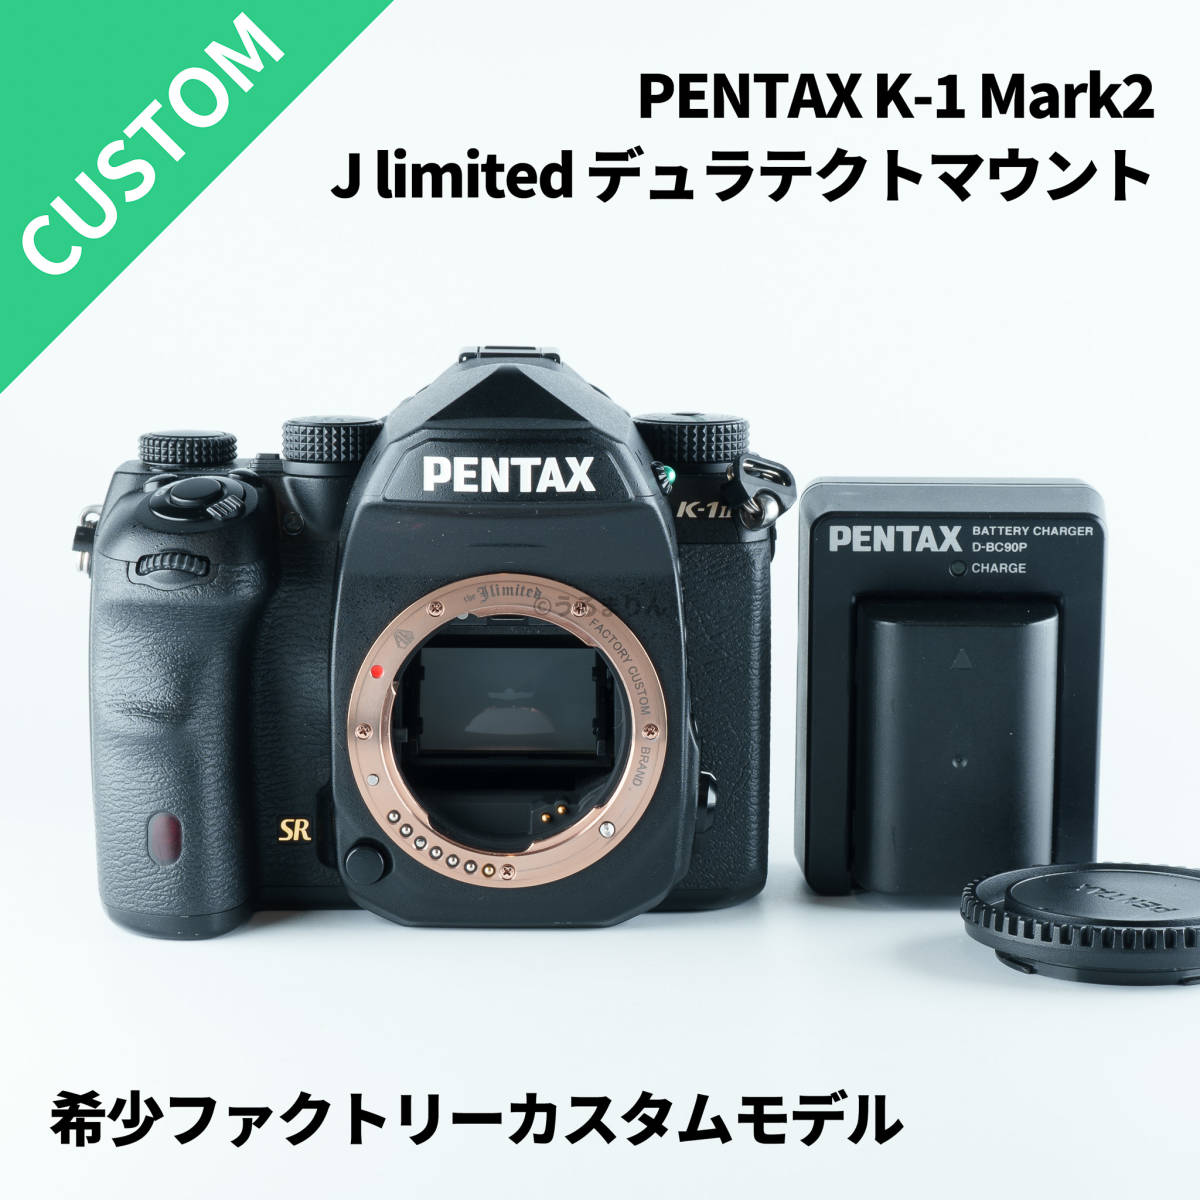 希少ファクトリーカスタムモデル PENTAX K-1 mark2 デュラテクト